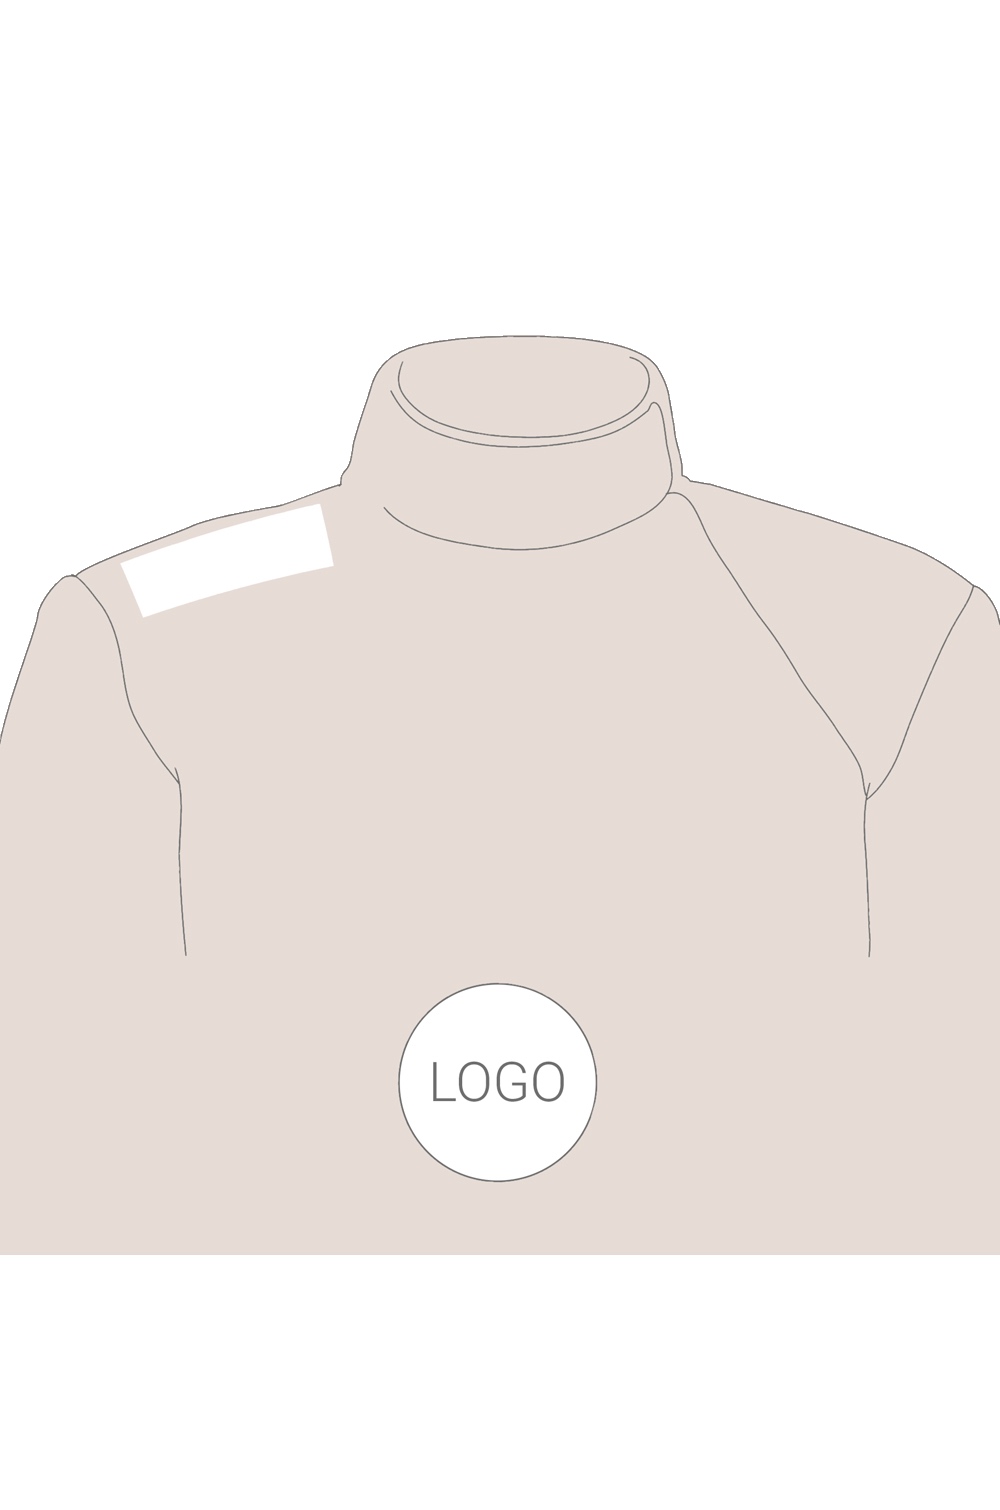 Printing of Sponsorship Logos on Electric Jacket